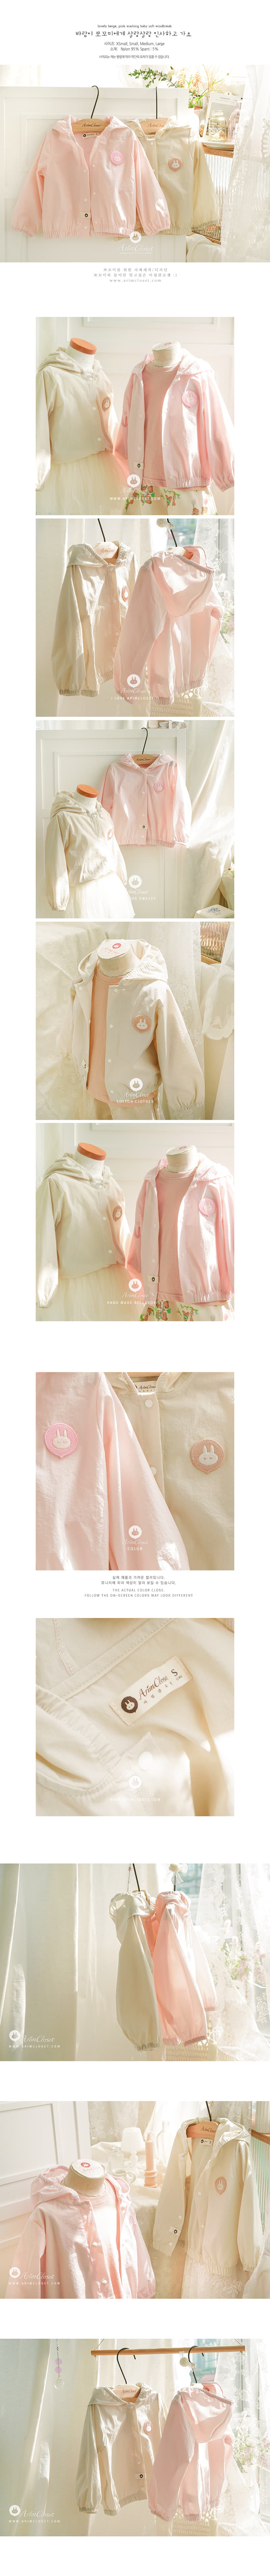 Arim Closet - Korean Baby Fashion - #onlinebabyboutique - Lovely Washing Soft Windbreaker - 2